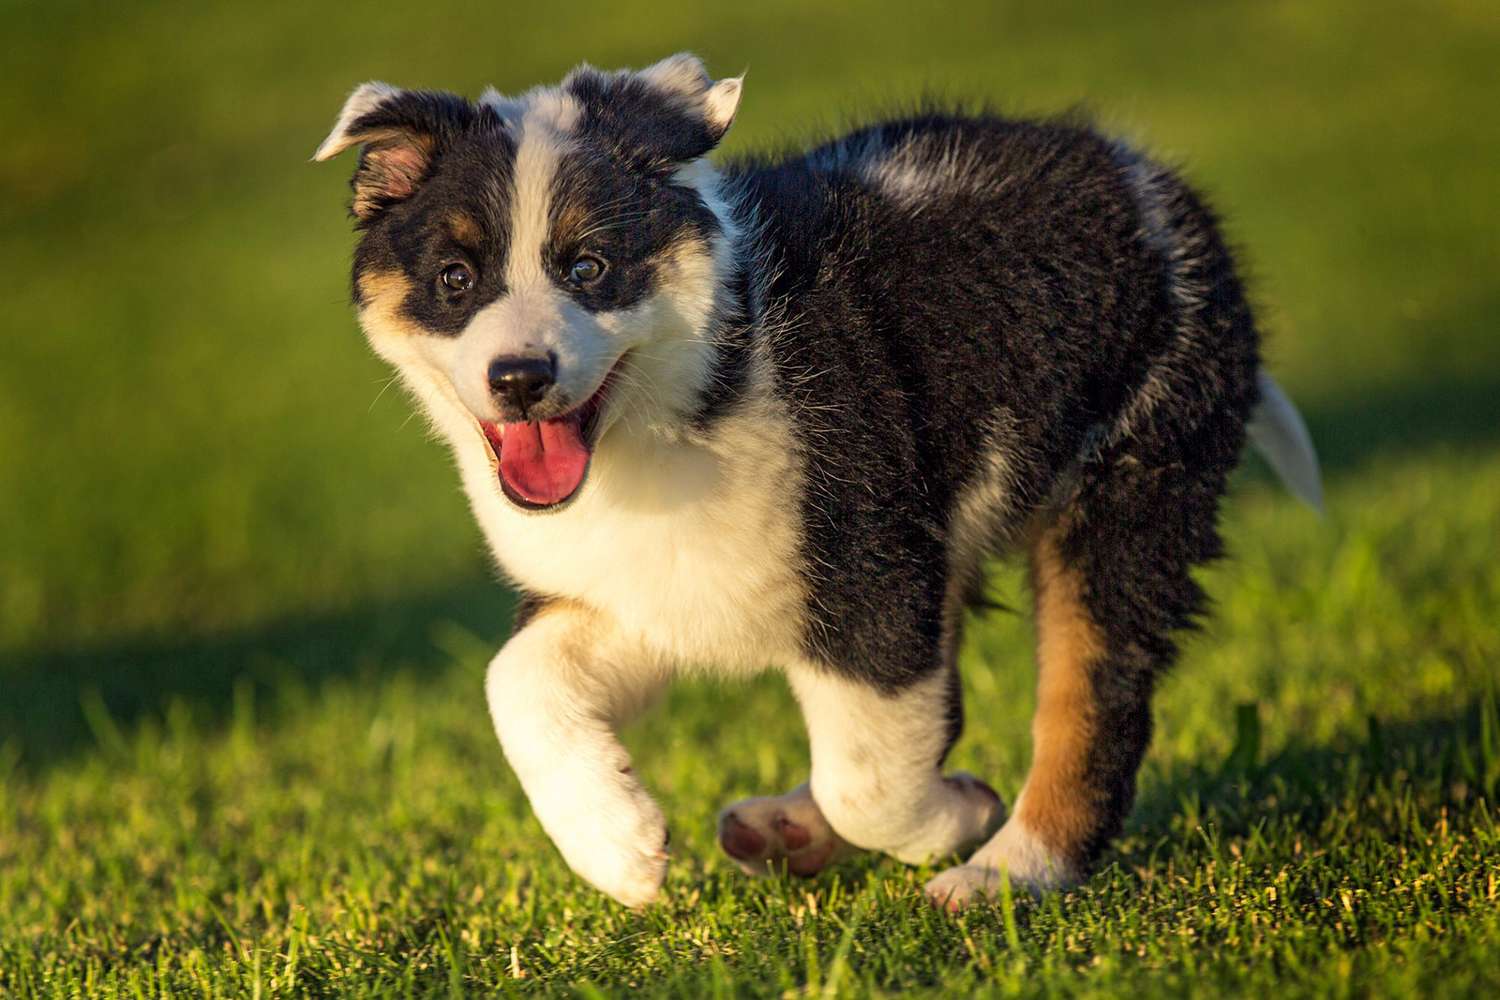 texas heeler puppy running on grass